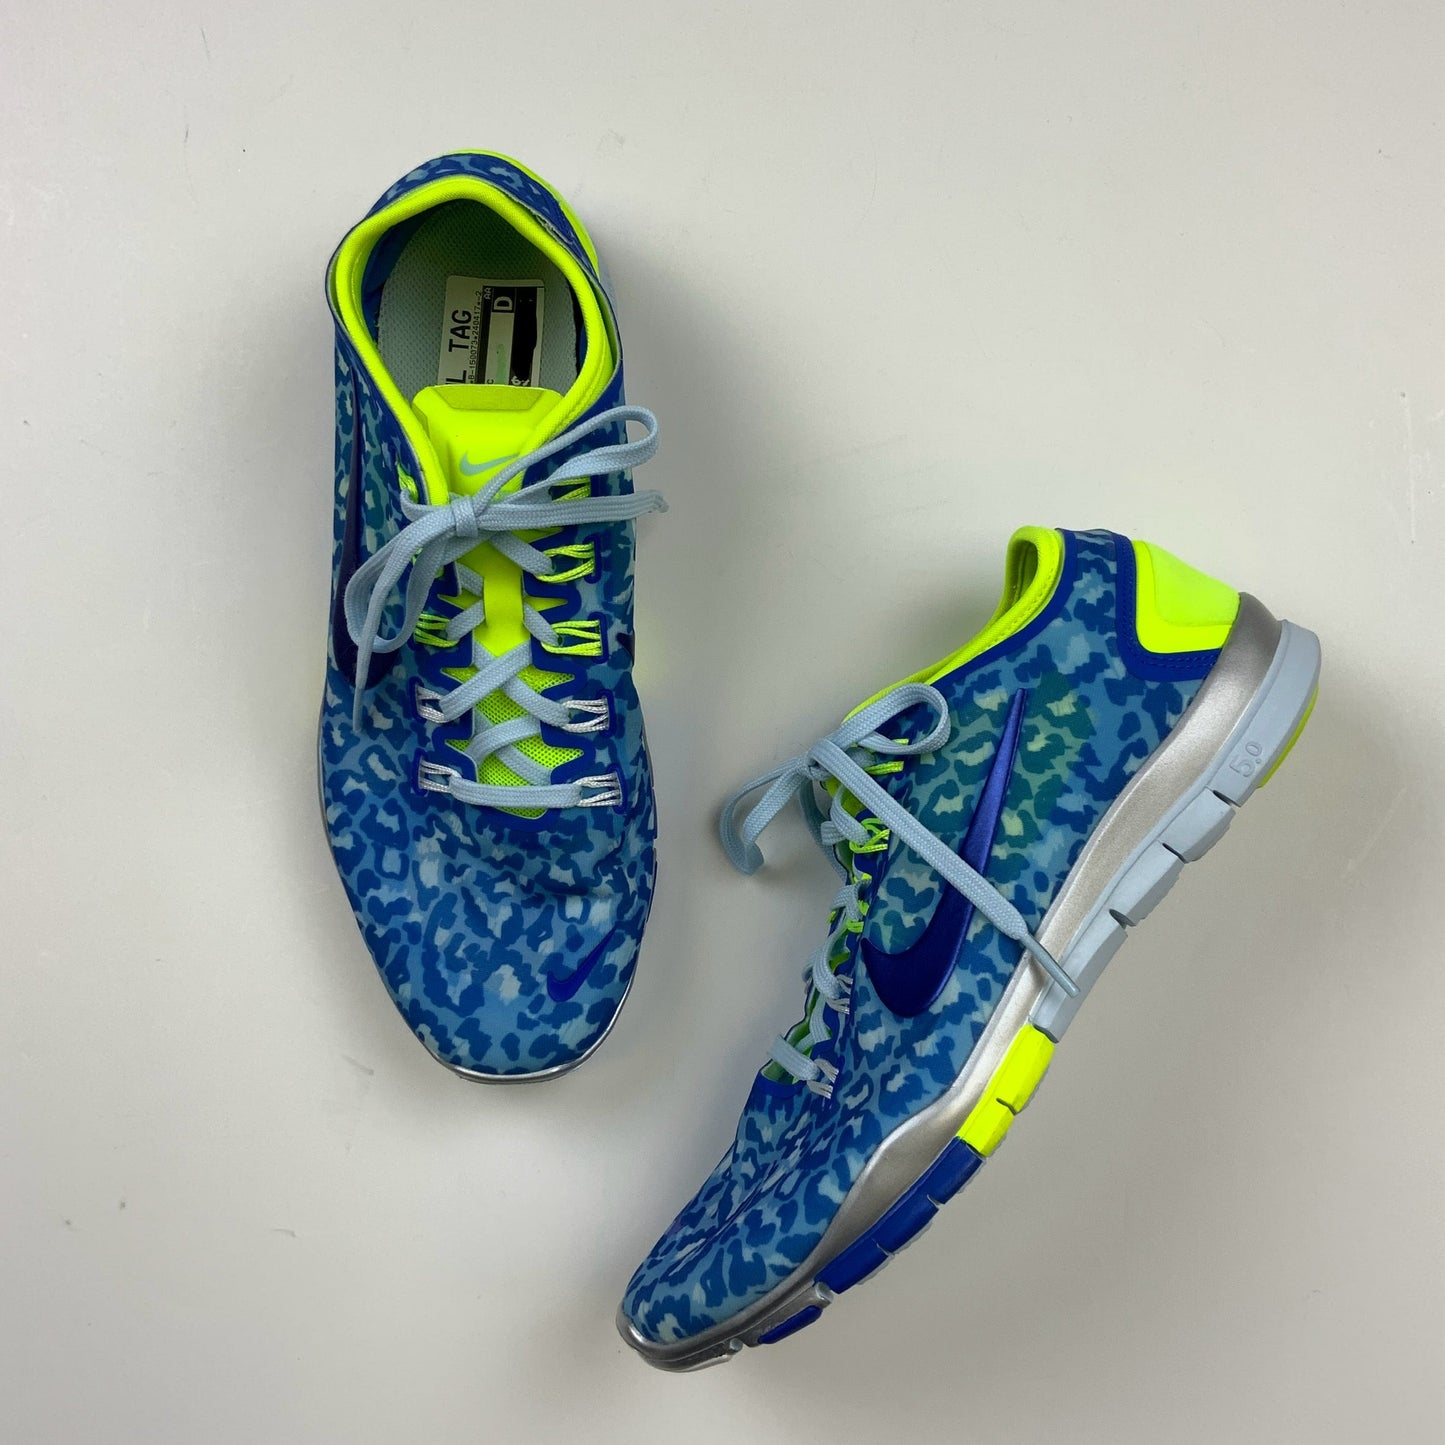 Blue Shoes Athletic Nike, Size 9.5